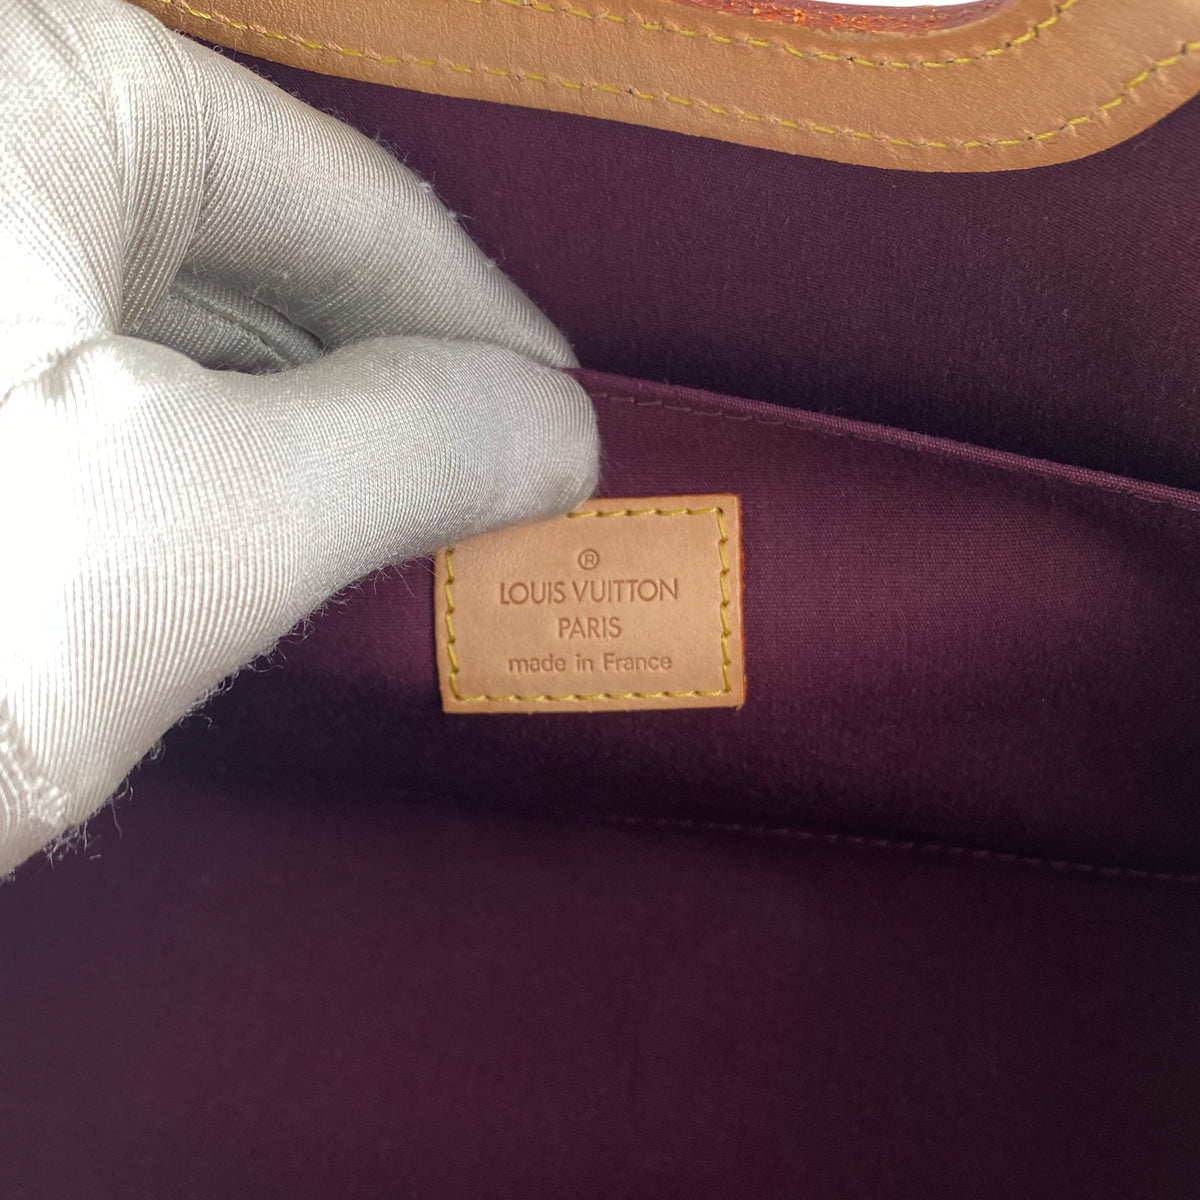 Roxbury Drive Vernis Violet Convertible Handbag – Baggio Consignment